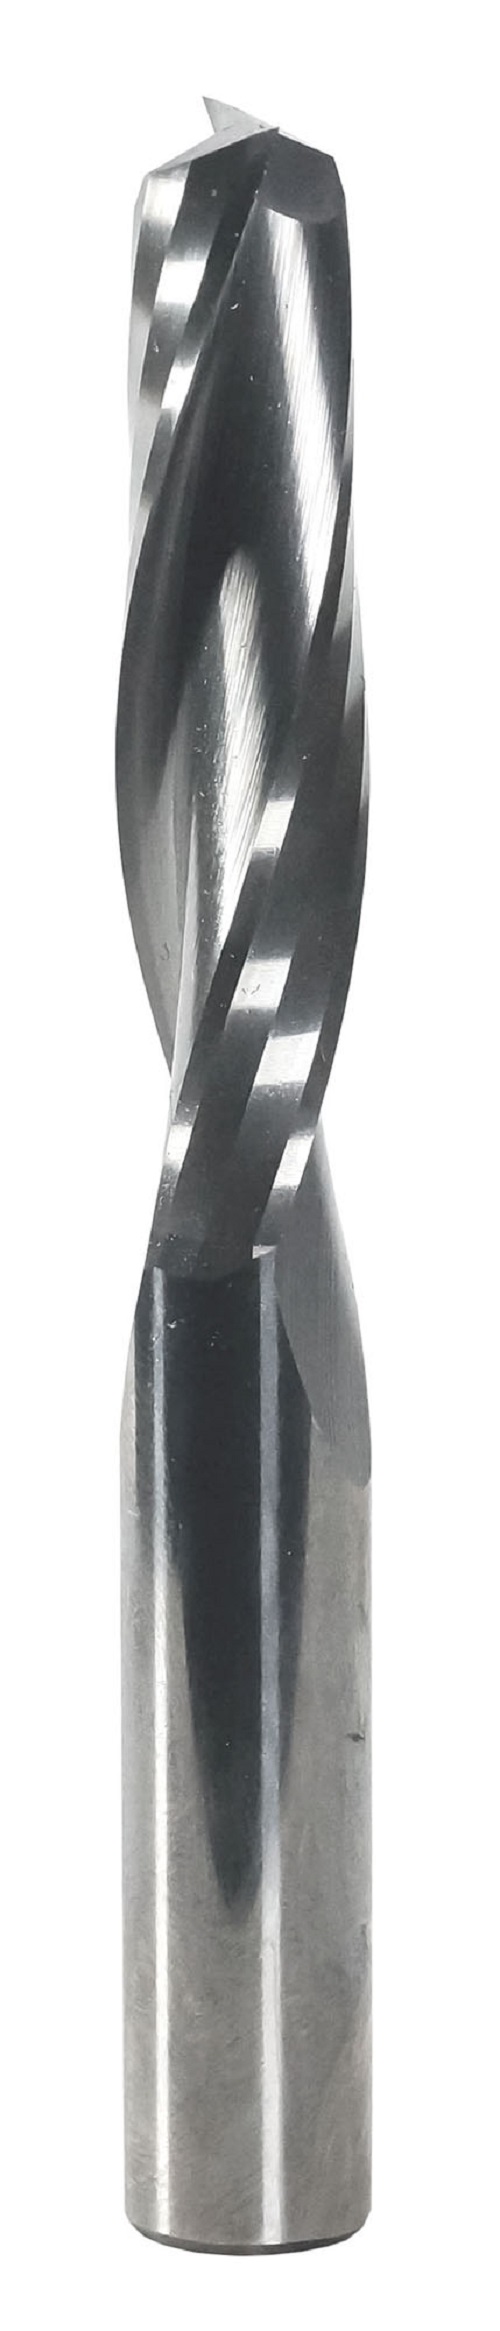 Фреза спиральная твердосплавная Энкор Z2 верхний рез ф12х52 мм хв.12 46655 фреза wpw pfm8192 копир сменные ножи верхний подшипник d19 b50 z2 хвостовик 12s pfm8192